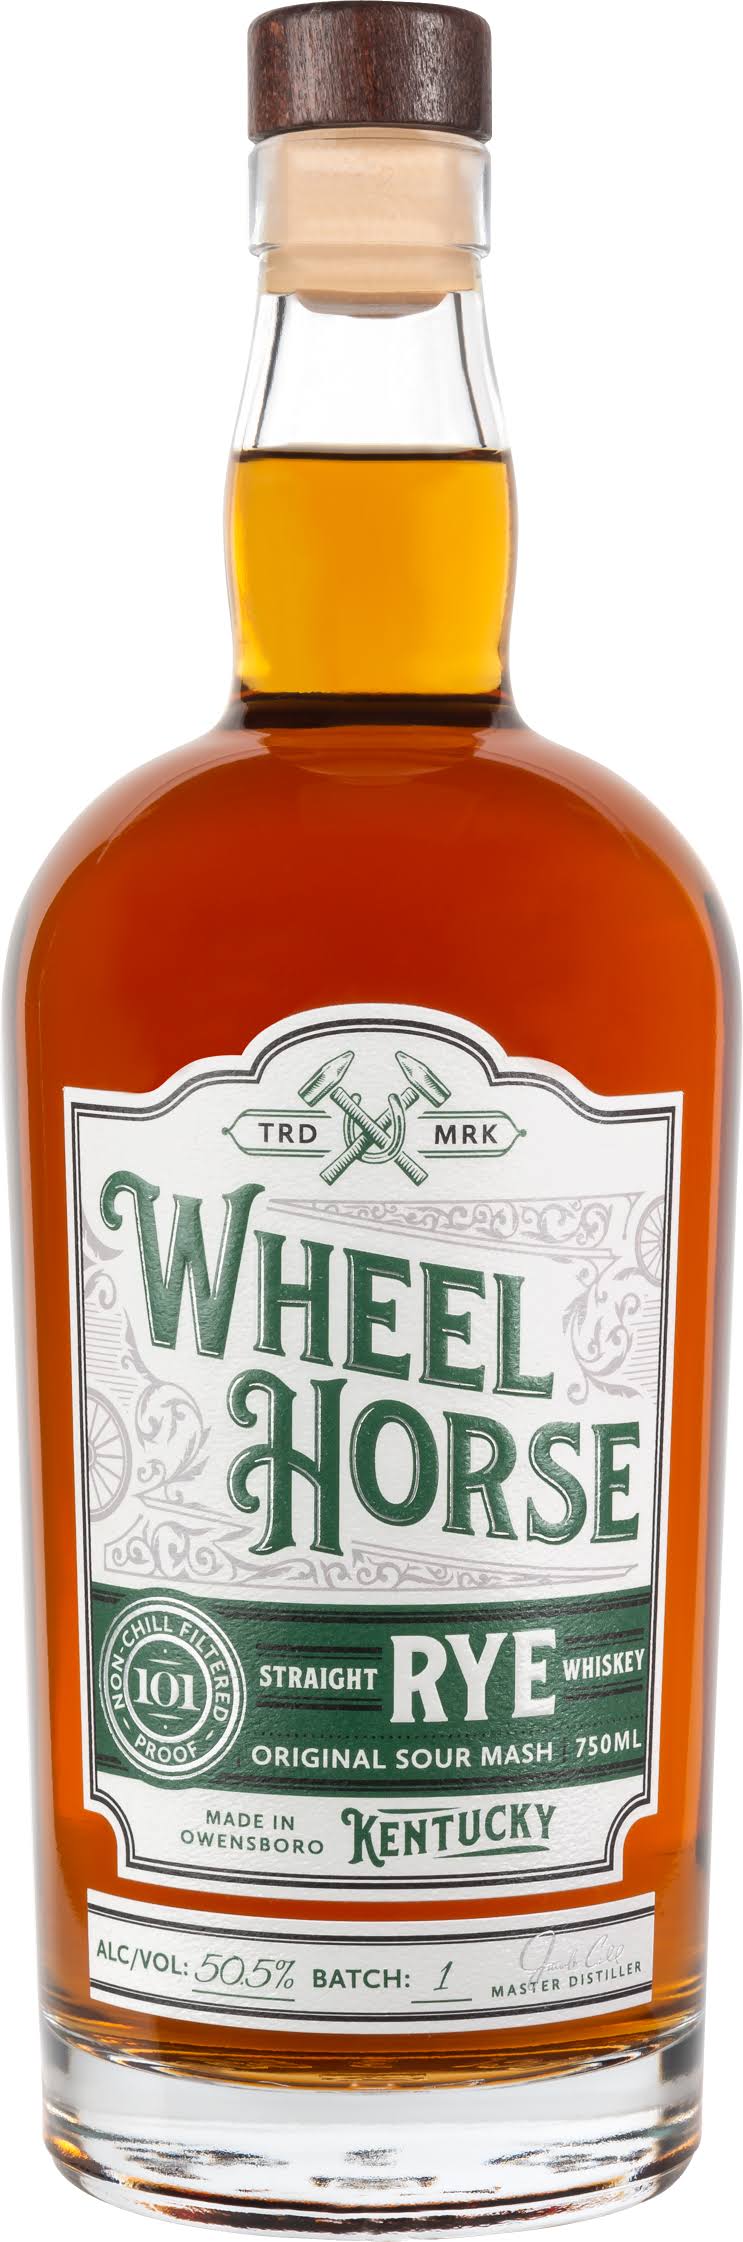 Wheel Horse Straight Rye Whiskey / 750ml